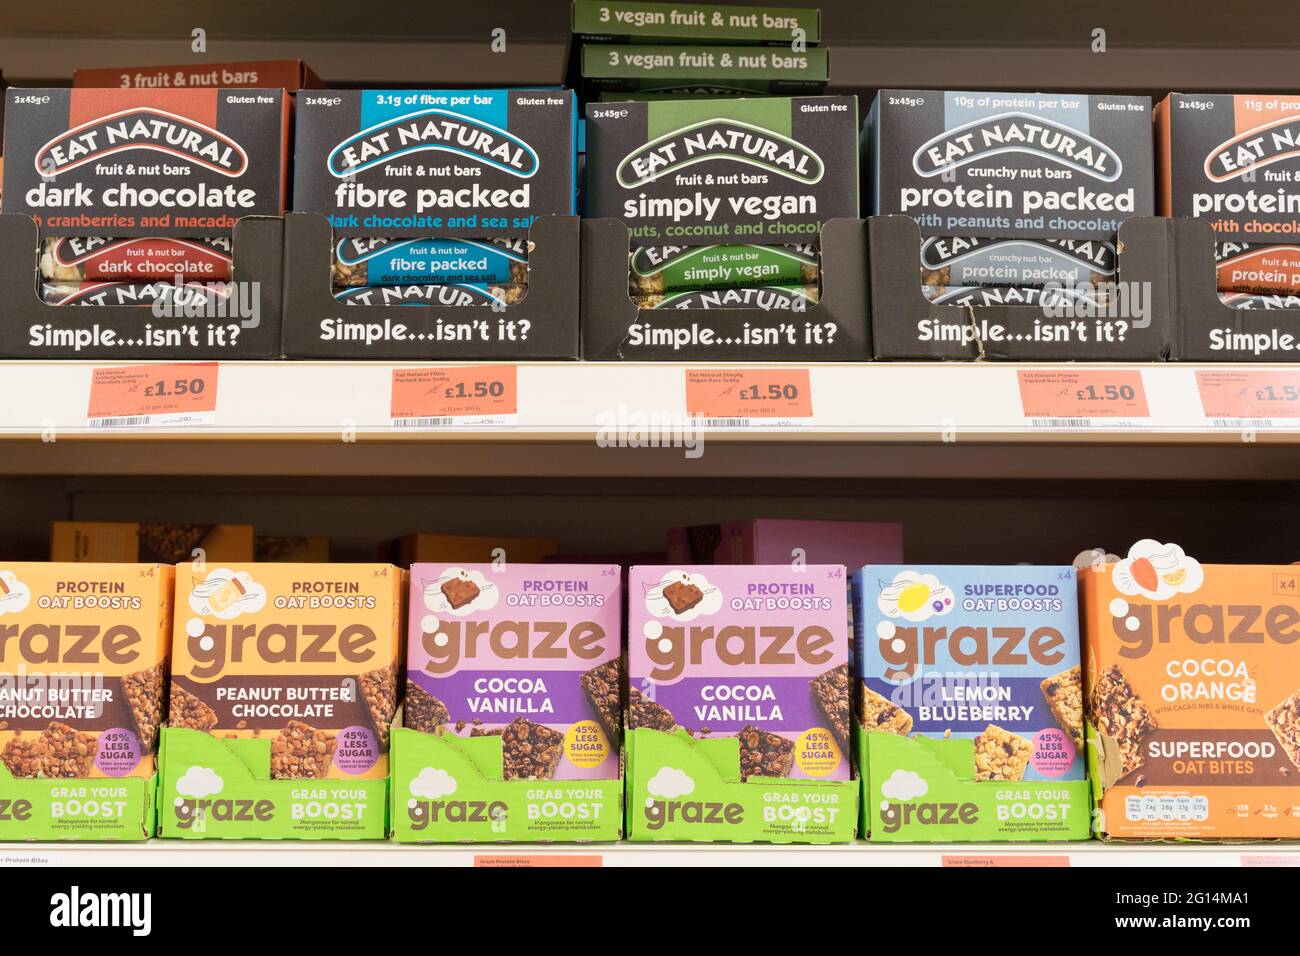 MANGEZ des snack-bars naturels et des barres de graze sur les étagères au supermarché , Angleterre , Royaume-Uni Banque D'Images